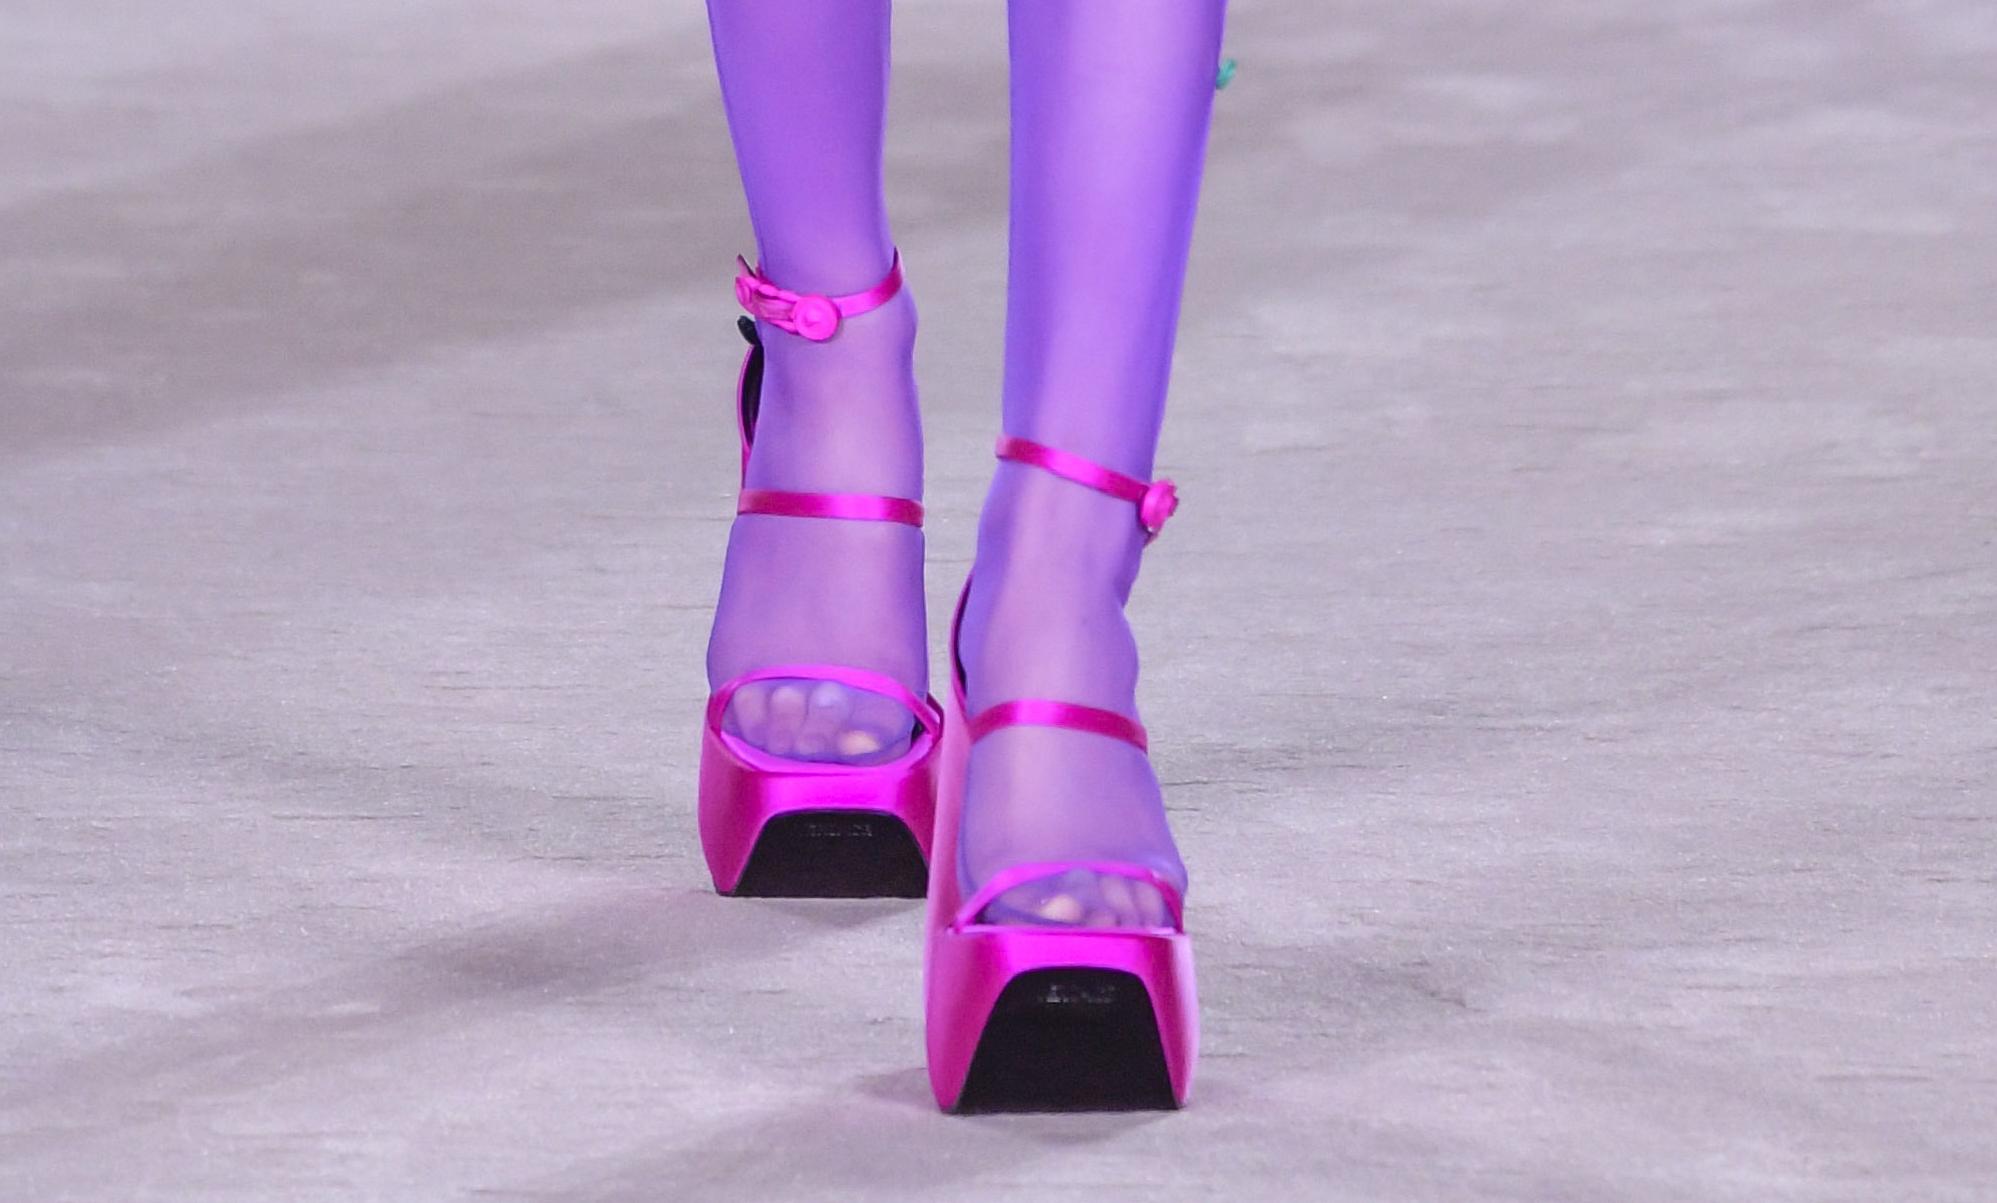 SOMMERKLAR: For vår- og sommersesongen 2022 viste Versace frem en ny platåskovariant. Den er fortsatt like chunky og fargerik som de vi så i høst- og vinterkolleksjonen, men denne har et nettere uttrykk med stroppene.